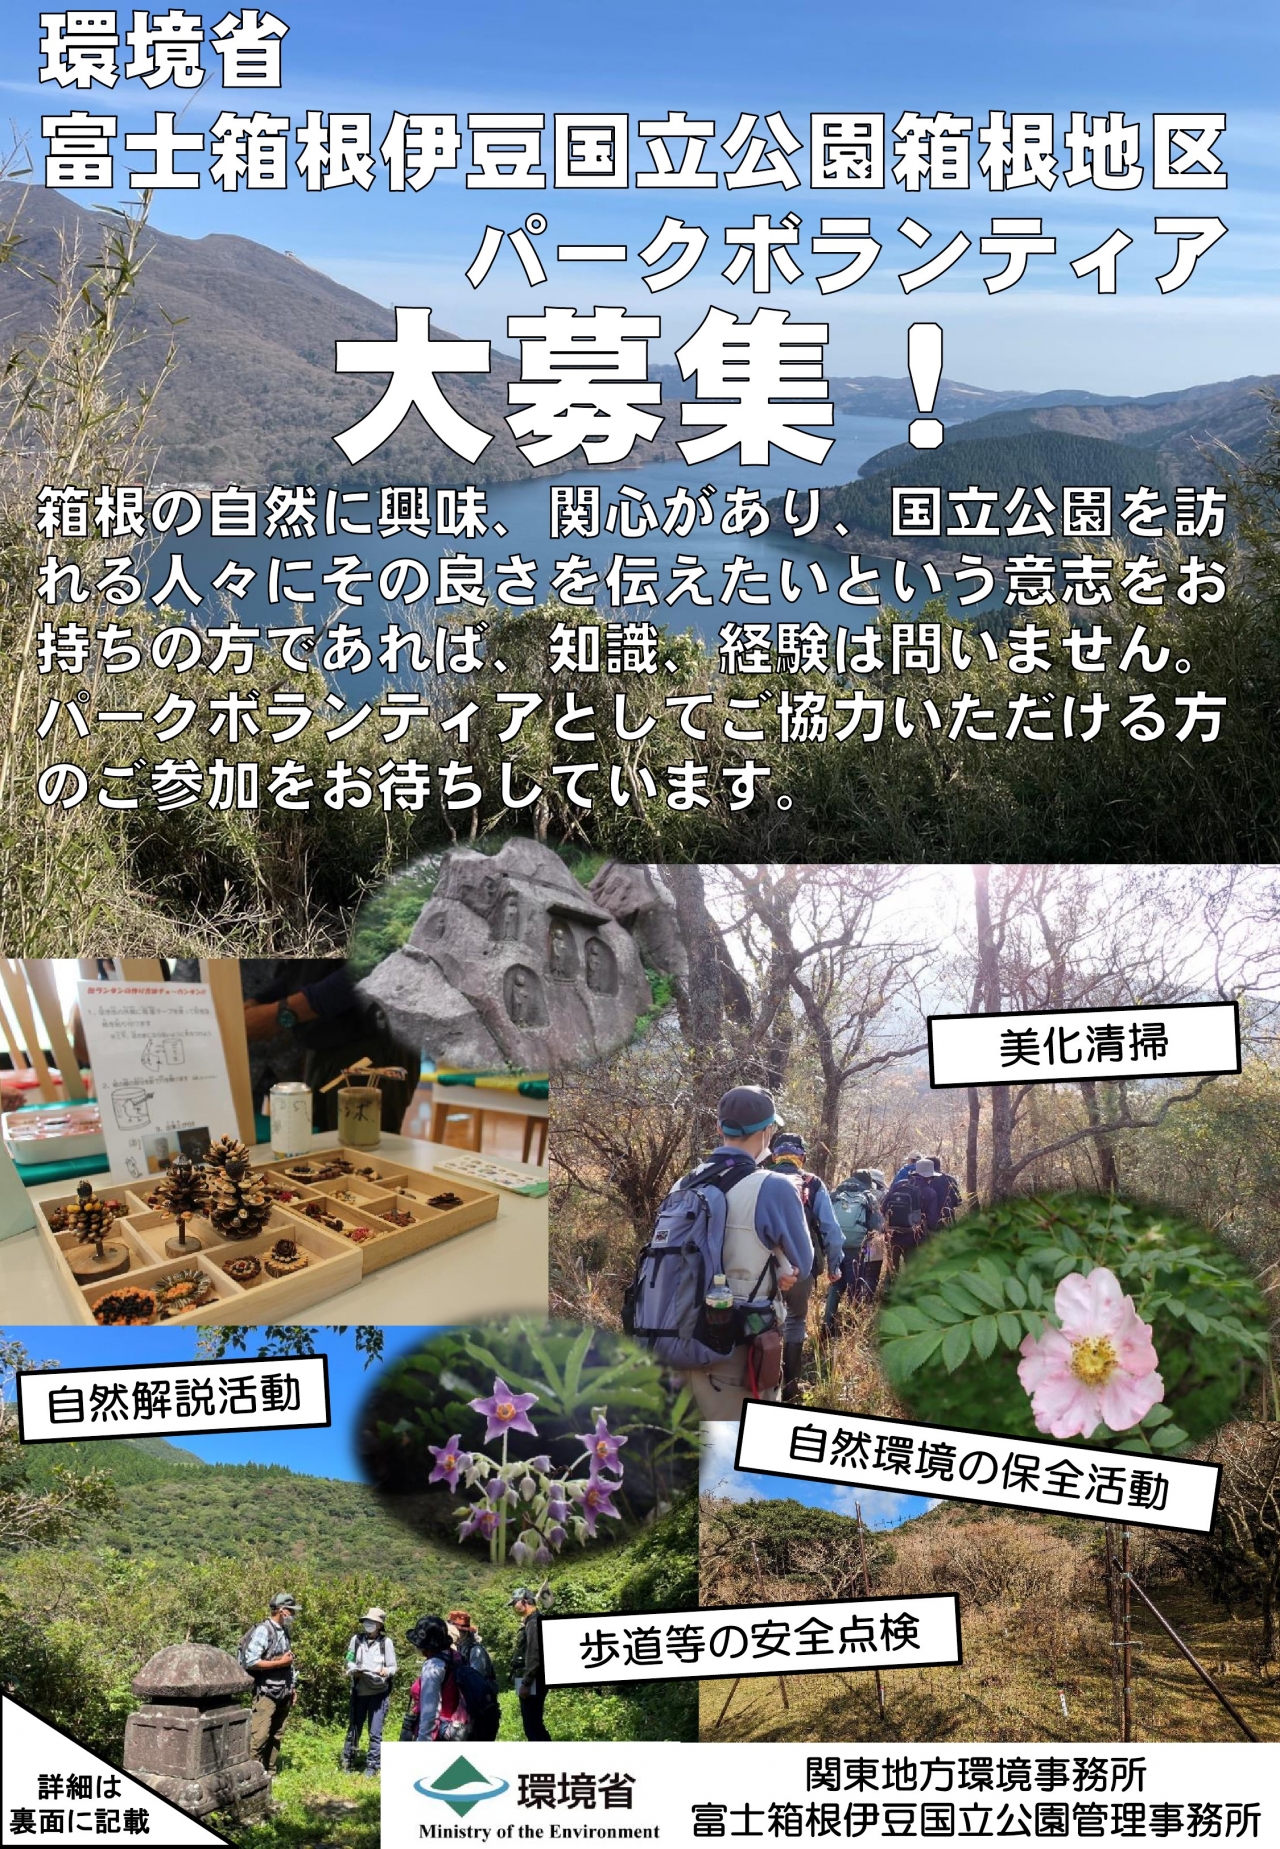 富士箱根伊豆国立公園箱根地区パークボランティアの募集について